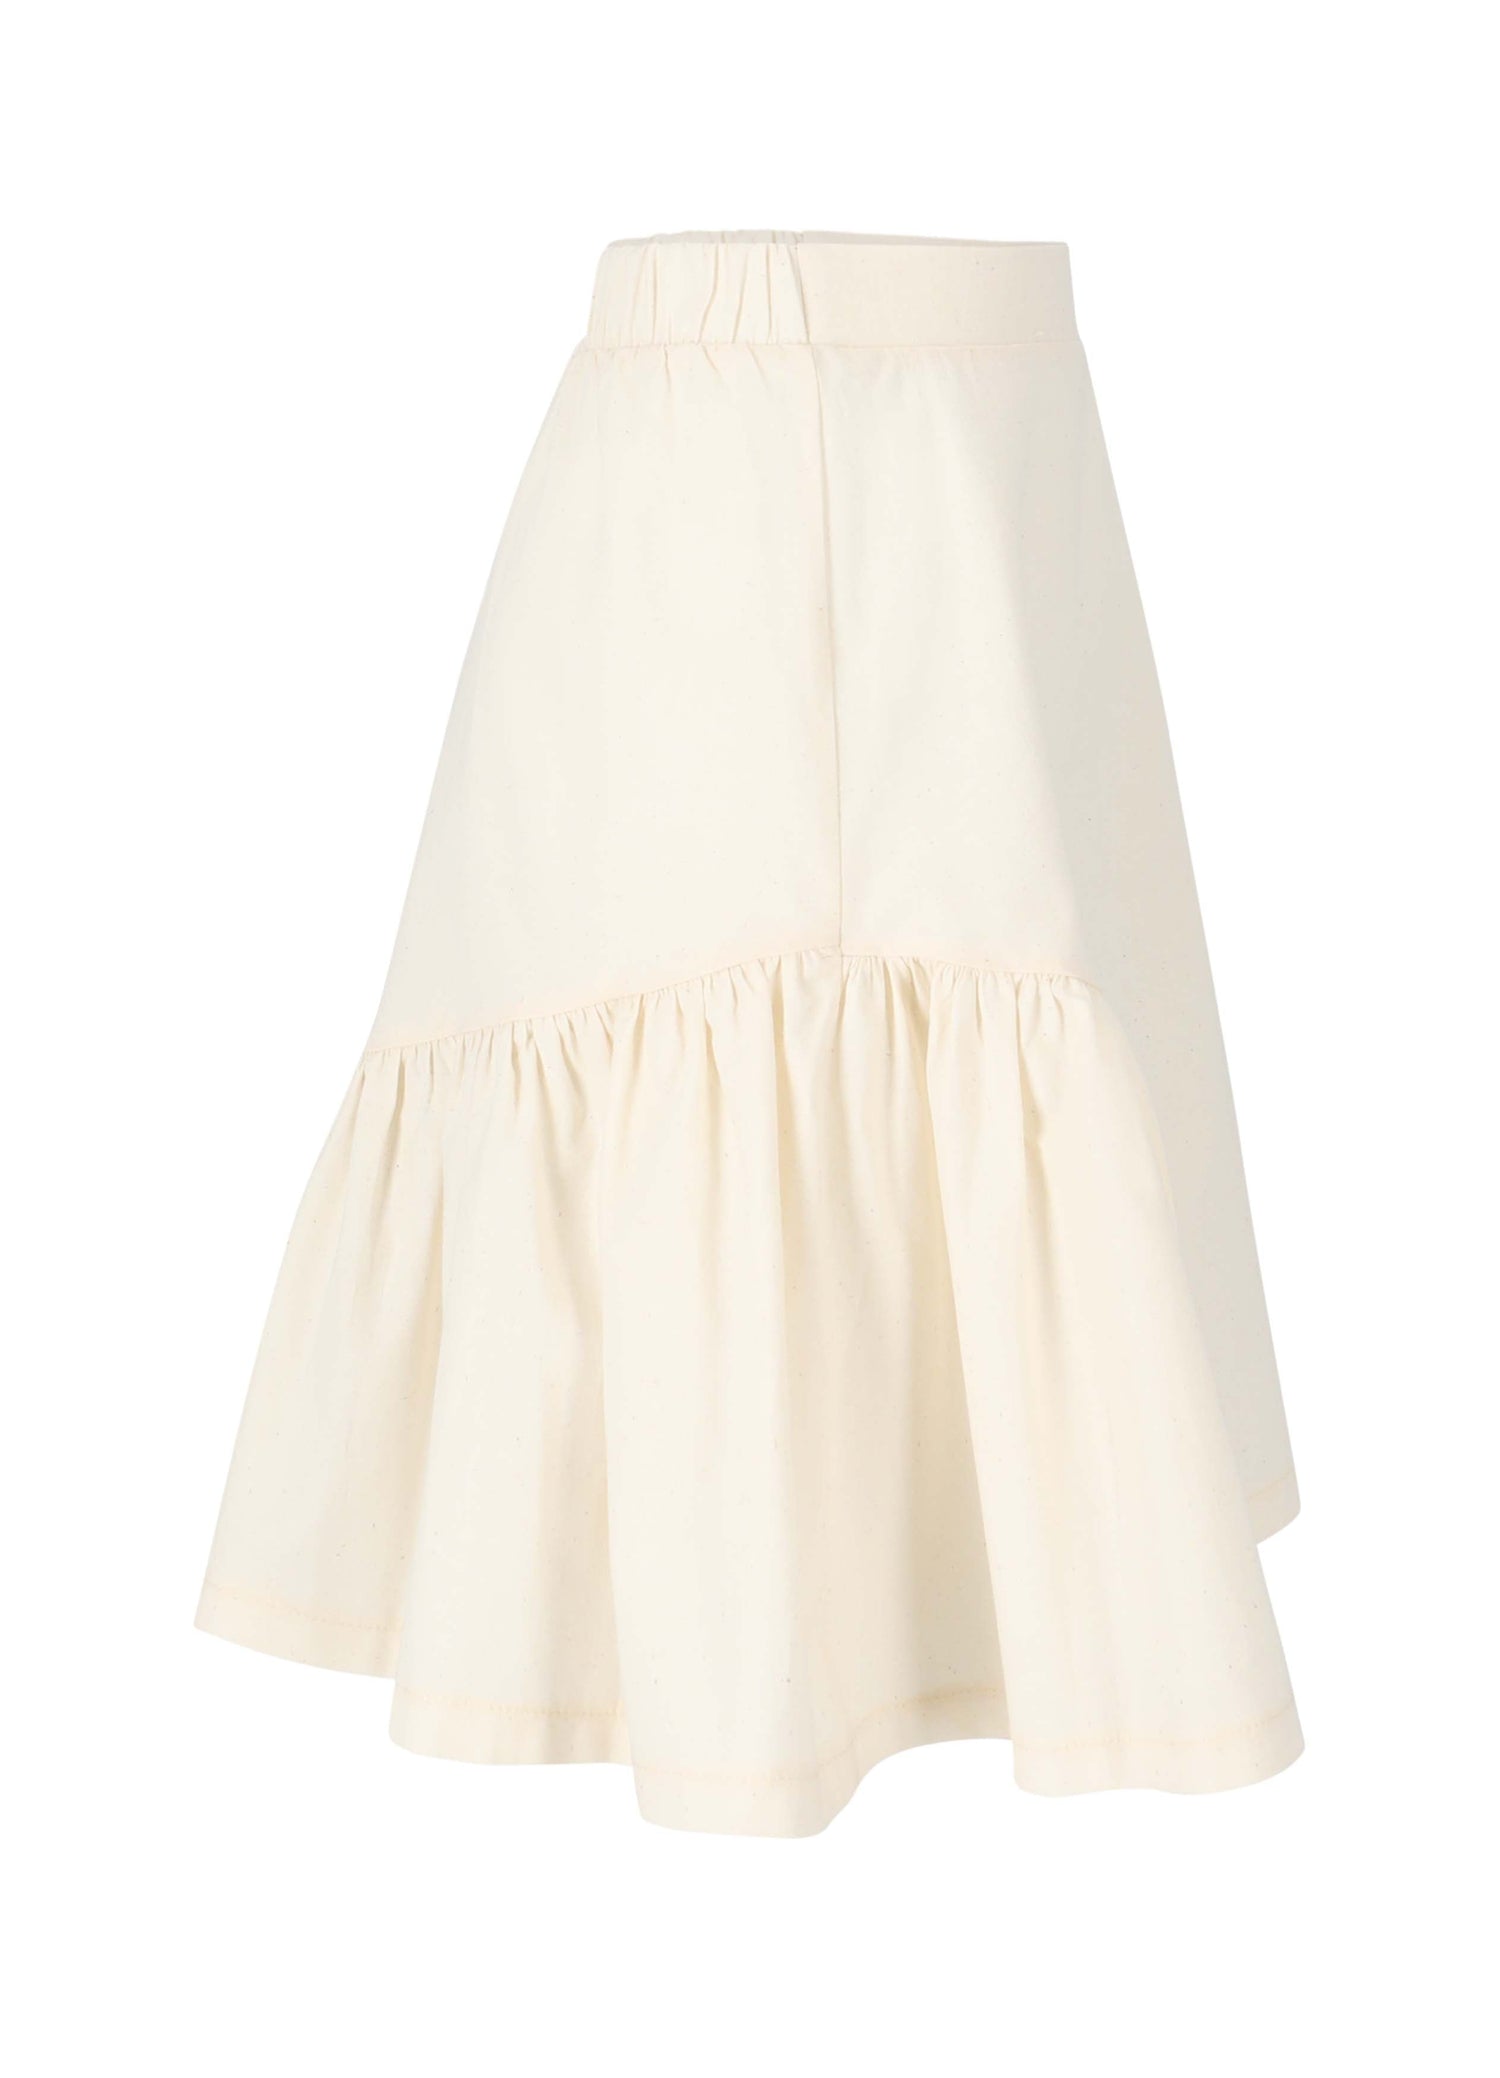 Skirt No. 7 - Natural Skirts LMN3 